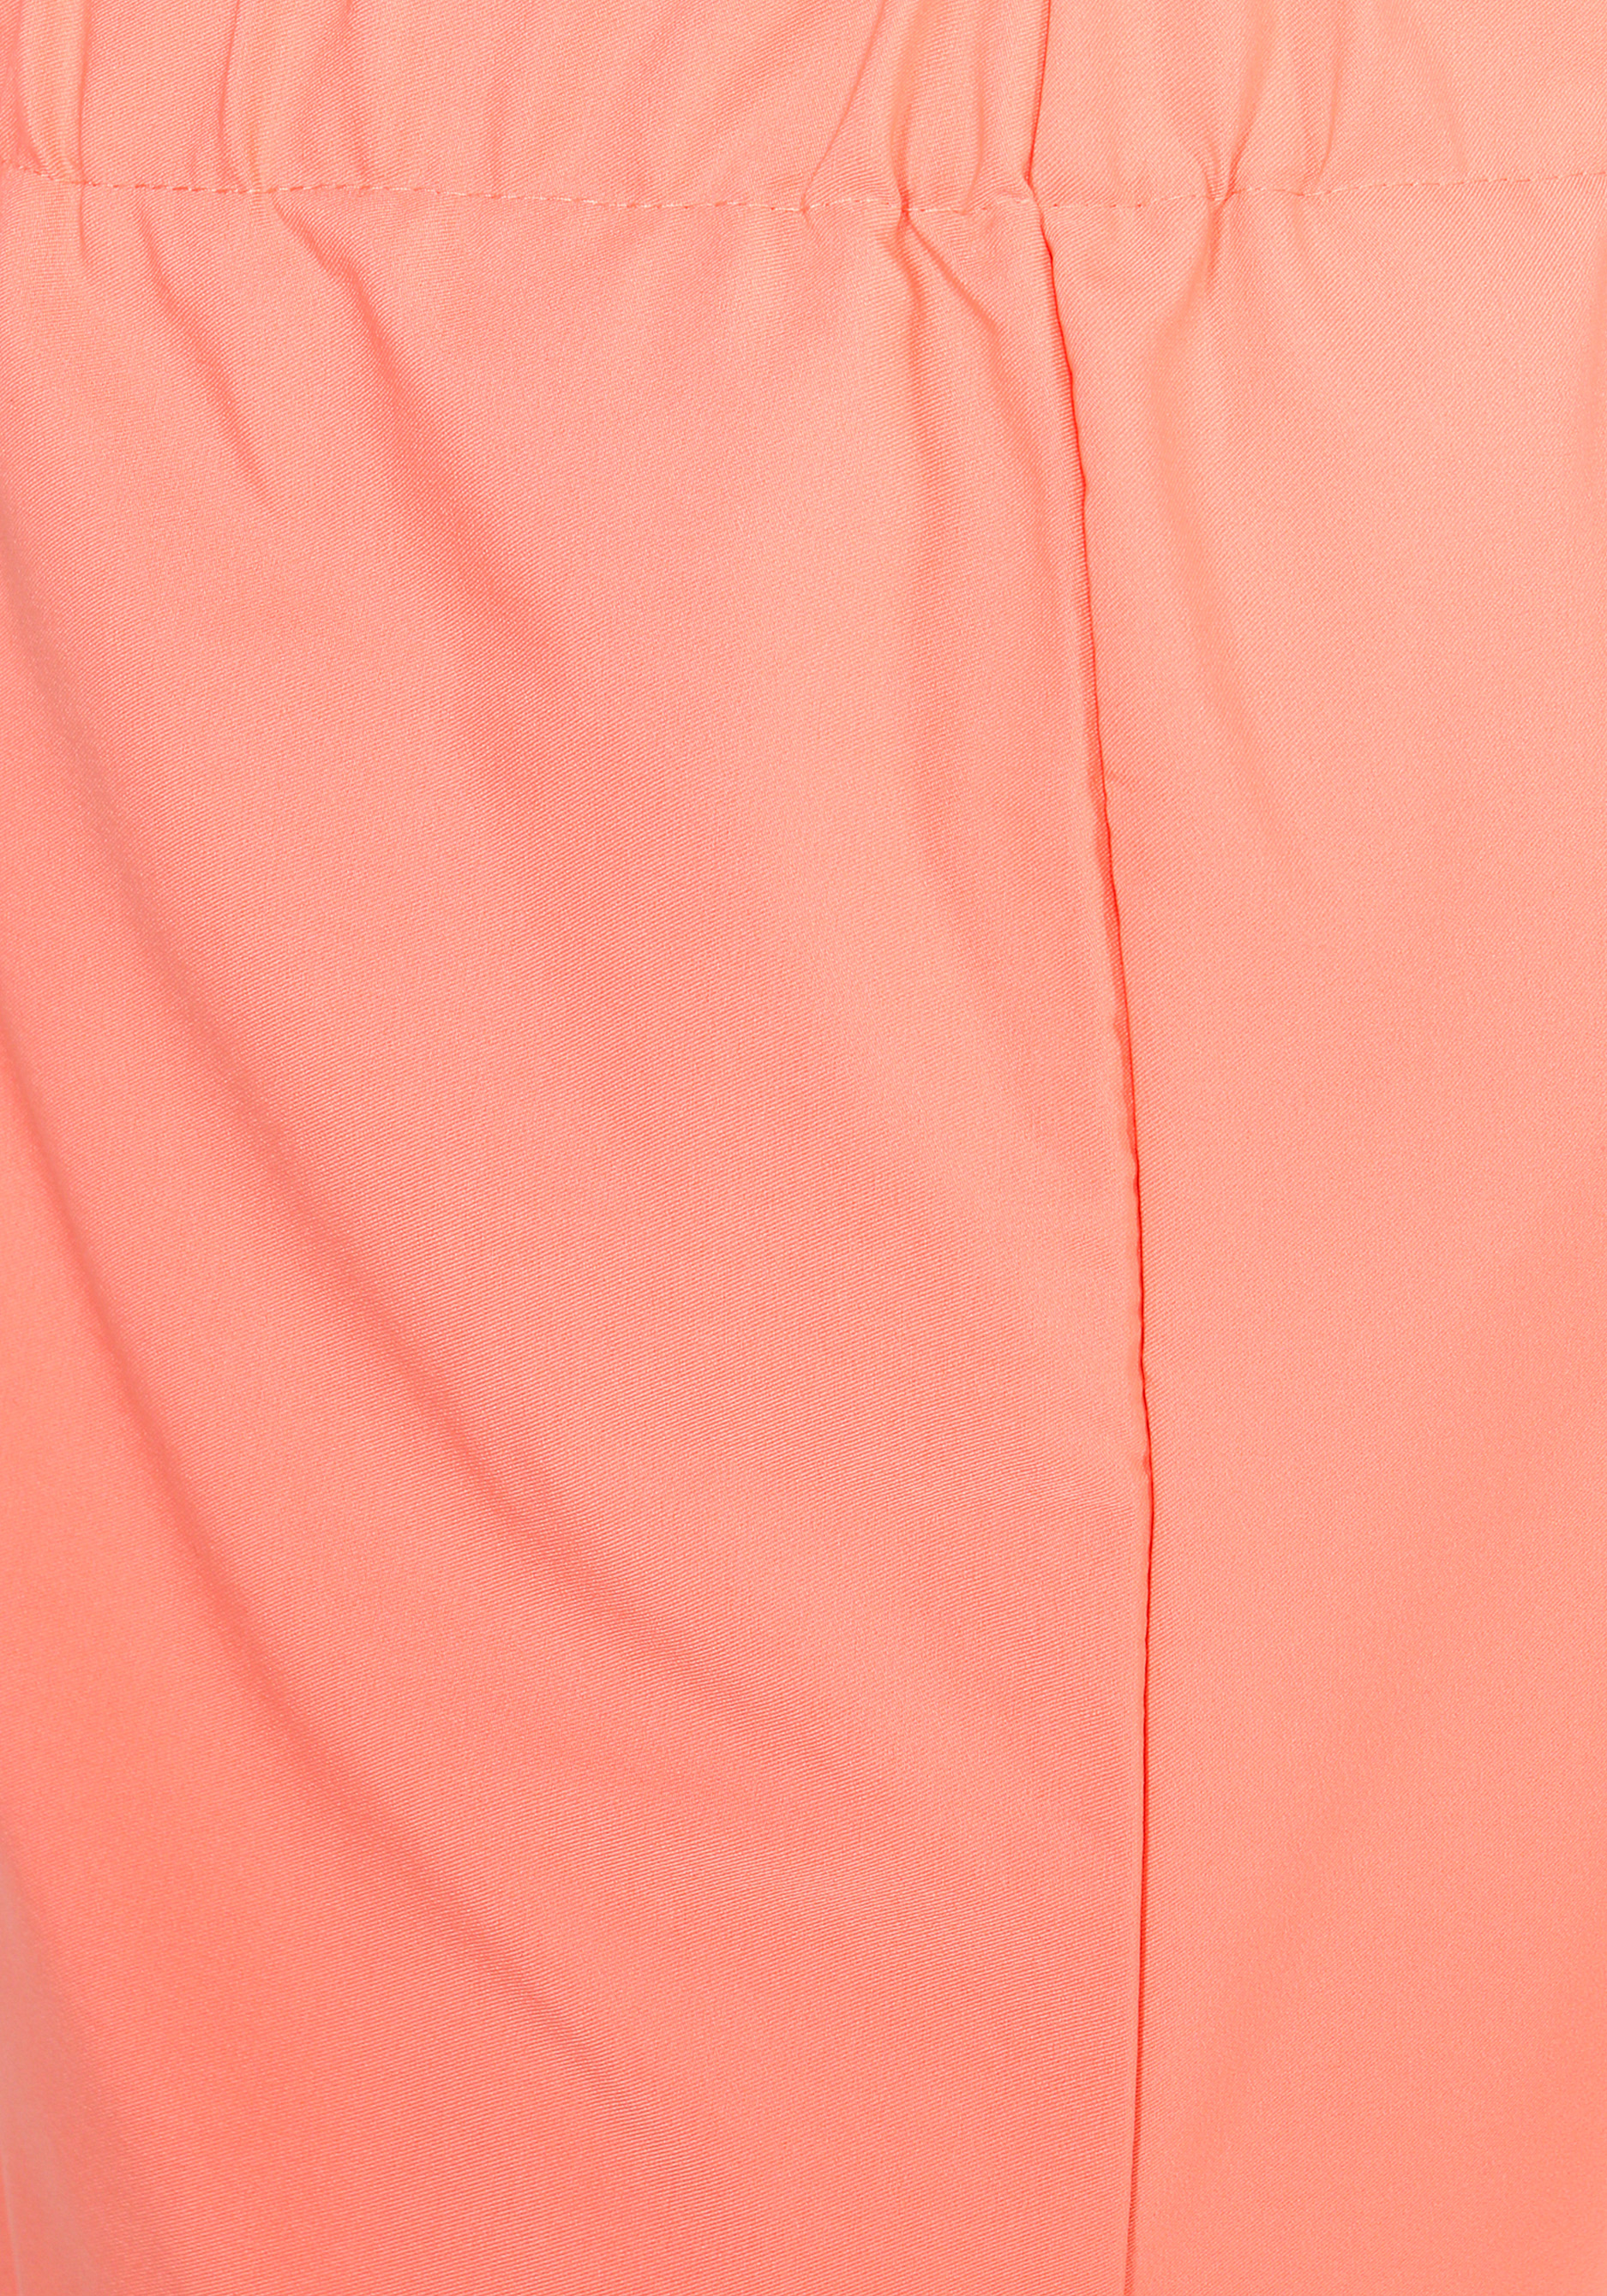 Юбка прямая на резинке со шлицей Golden Line, размер 56, цвет персик - фото 3